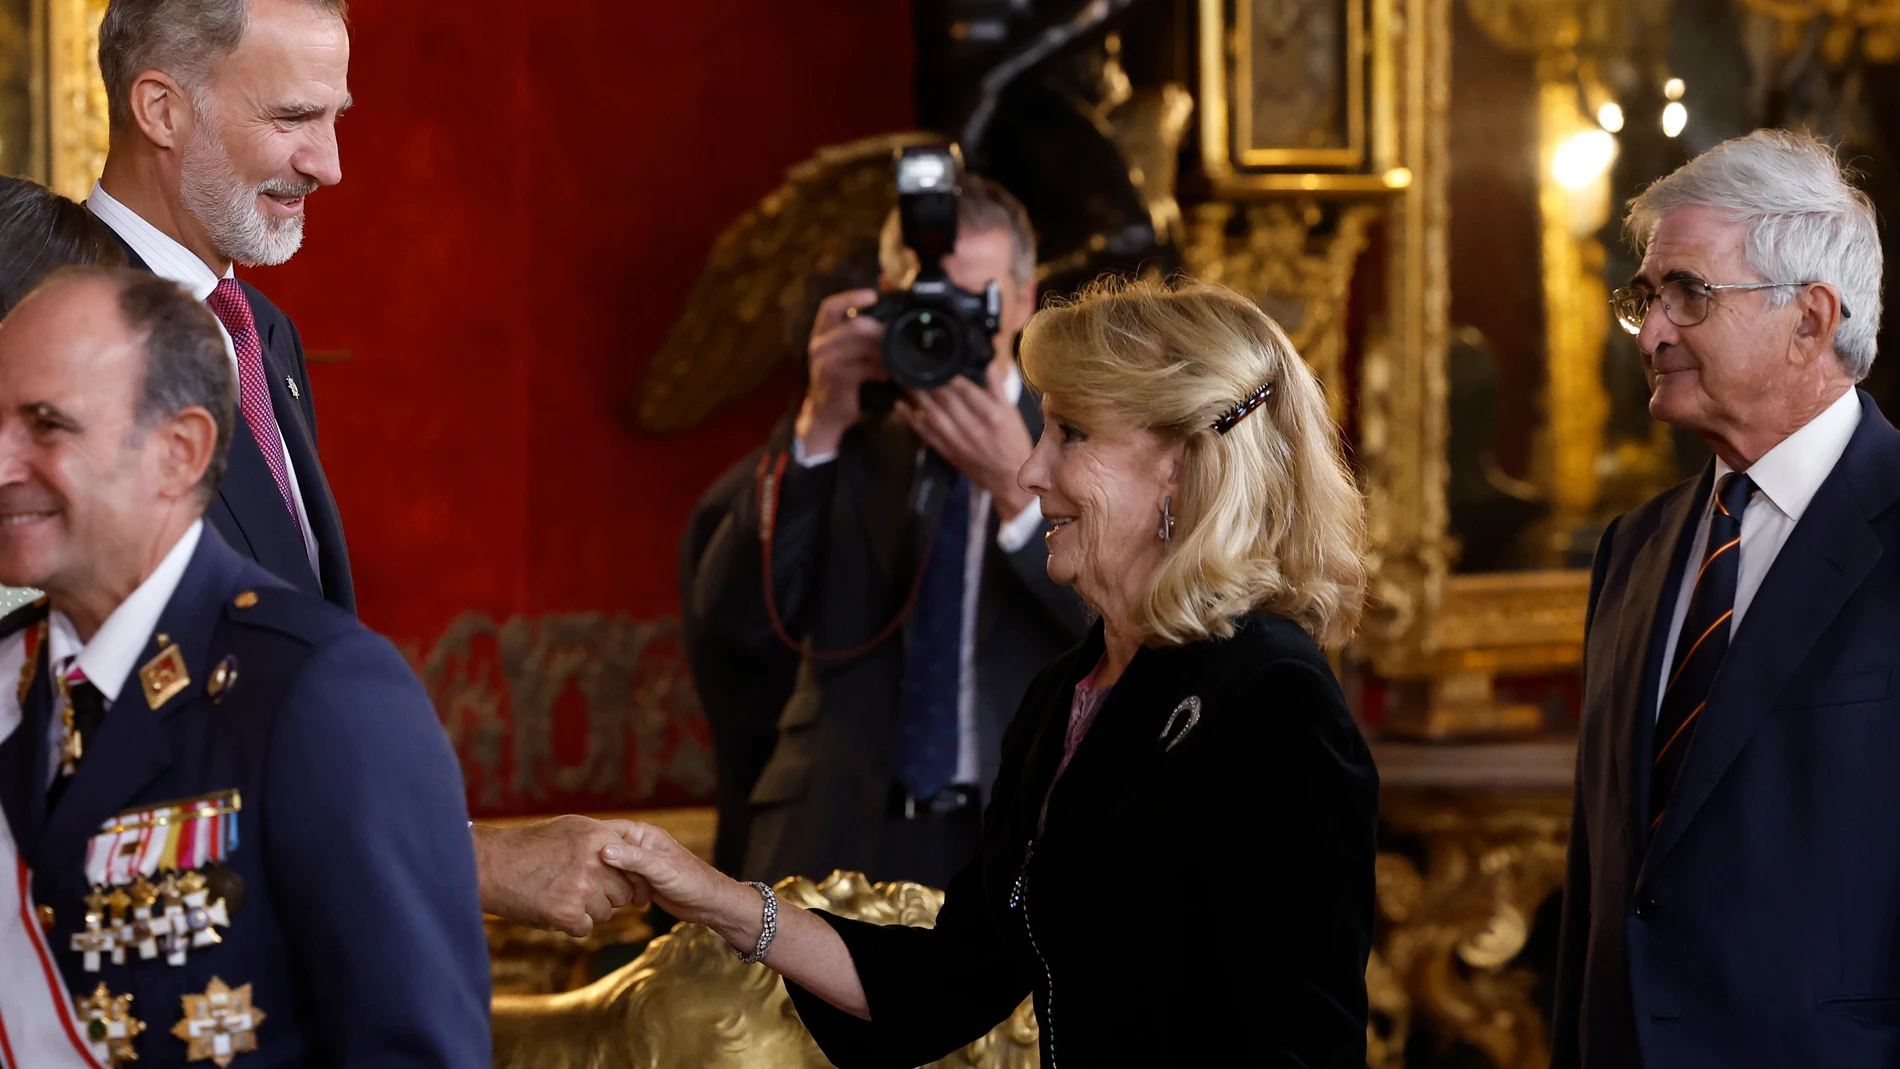 El rey Felipe VI saluda a la expresidenta de la Comunidad de Madrid Esperanza Aguirre a su llegada a la tradicional recepción a las altas autoridades del Estado y a representantes del mundo político, económico, social y cultural, tras el desfile por el Día de la Fiesta Nacional, este miércoles en el Palacio Real